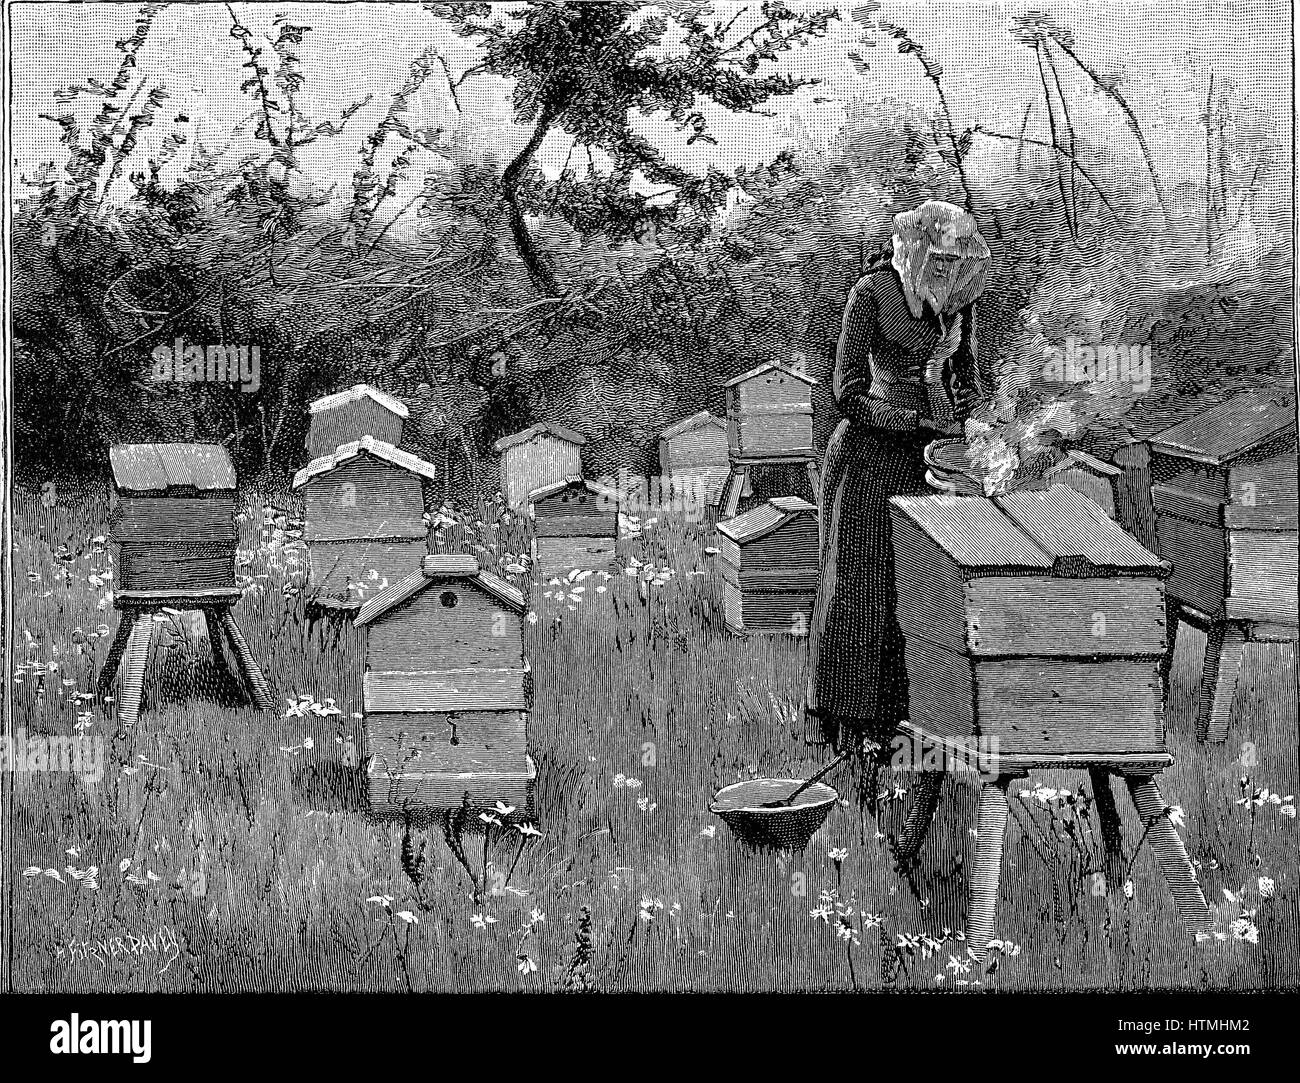 Bienenhaus aus Holz Nesselsucht, Lismore, Irland. Frau in schützenden Schleier mit Faltenbalg, um Rauch in den Bienenstock zu pusten, Bienen weniger aggressiv zu rendern, bevor Sie den Bienenstock öffnen. Gravur von "Illustriert die englische Zeitschrift", London, 1890 Stockfoto